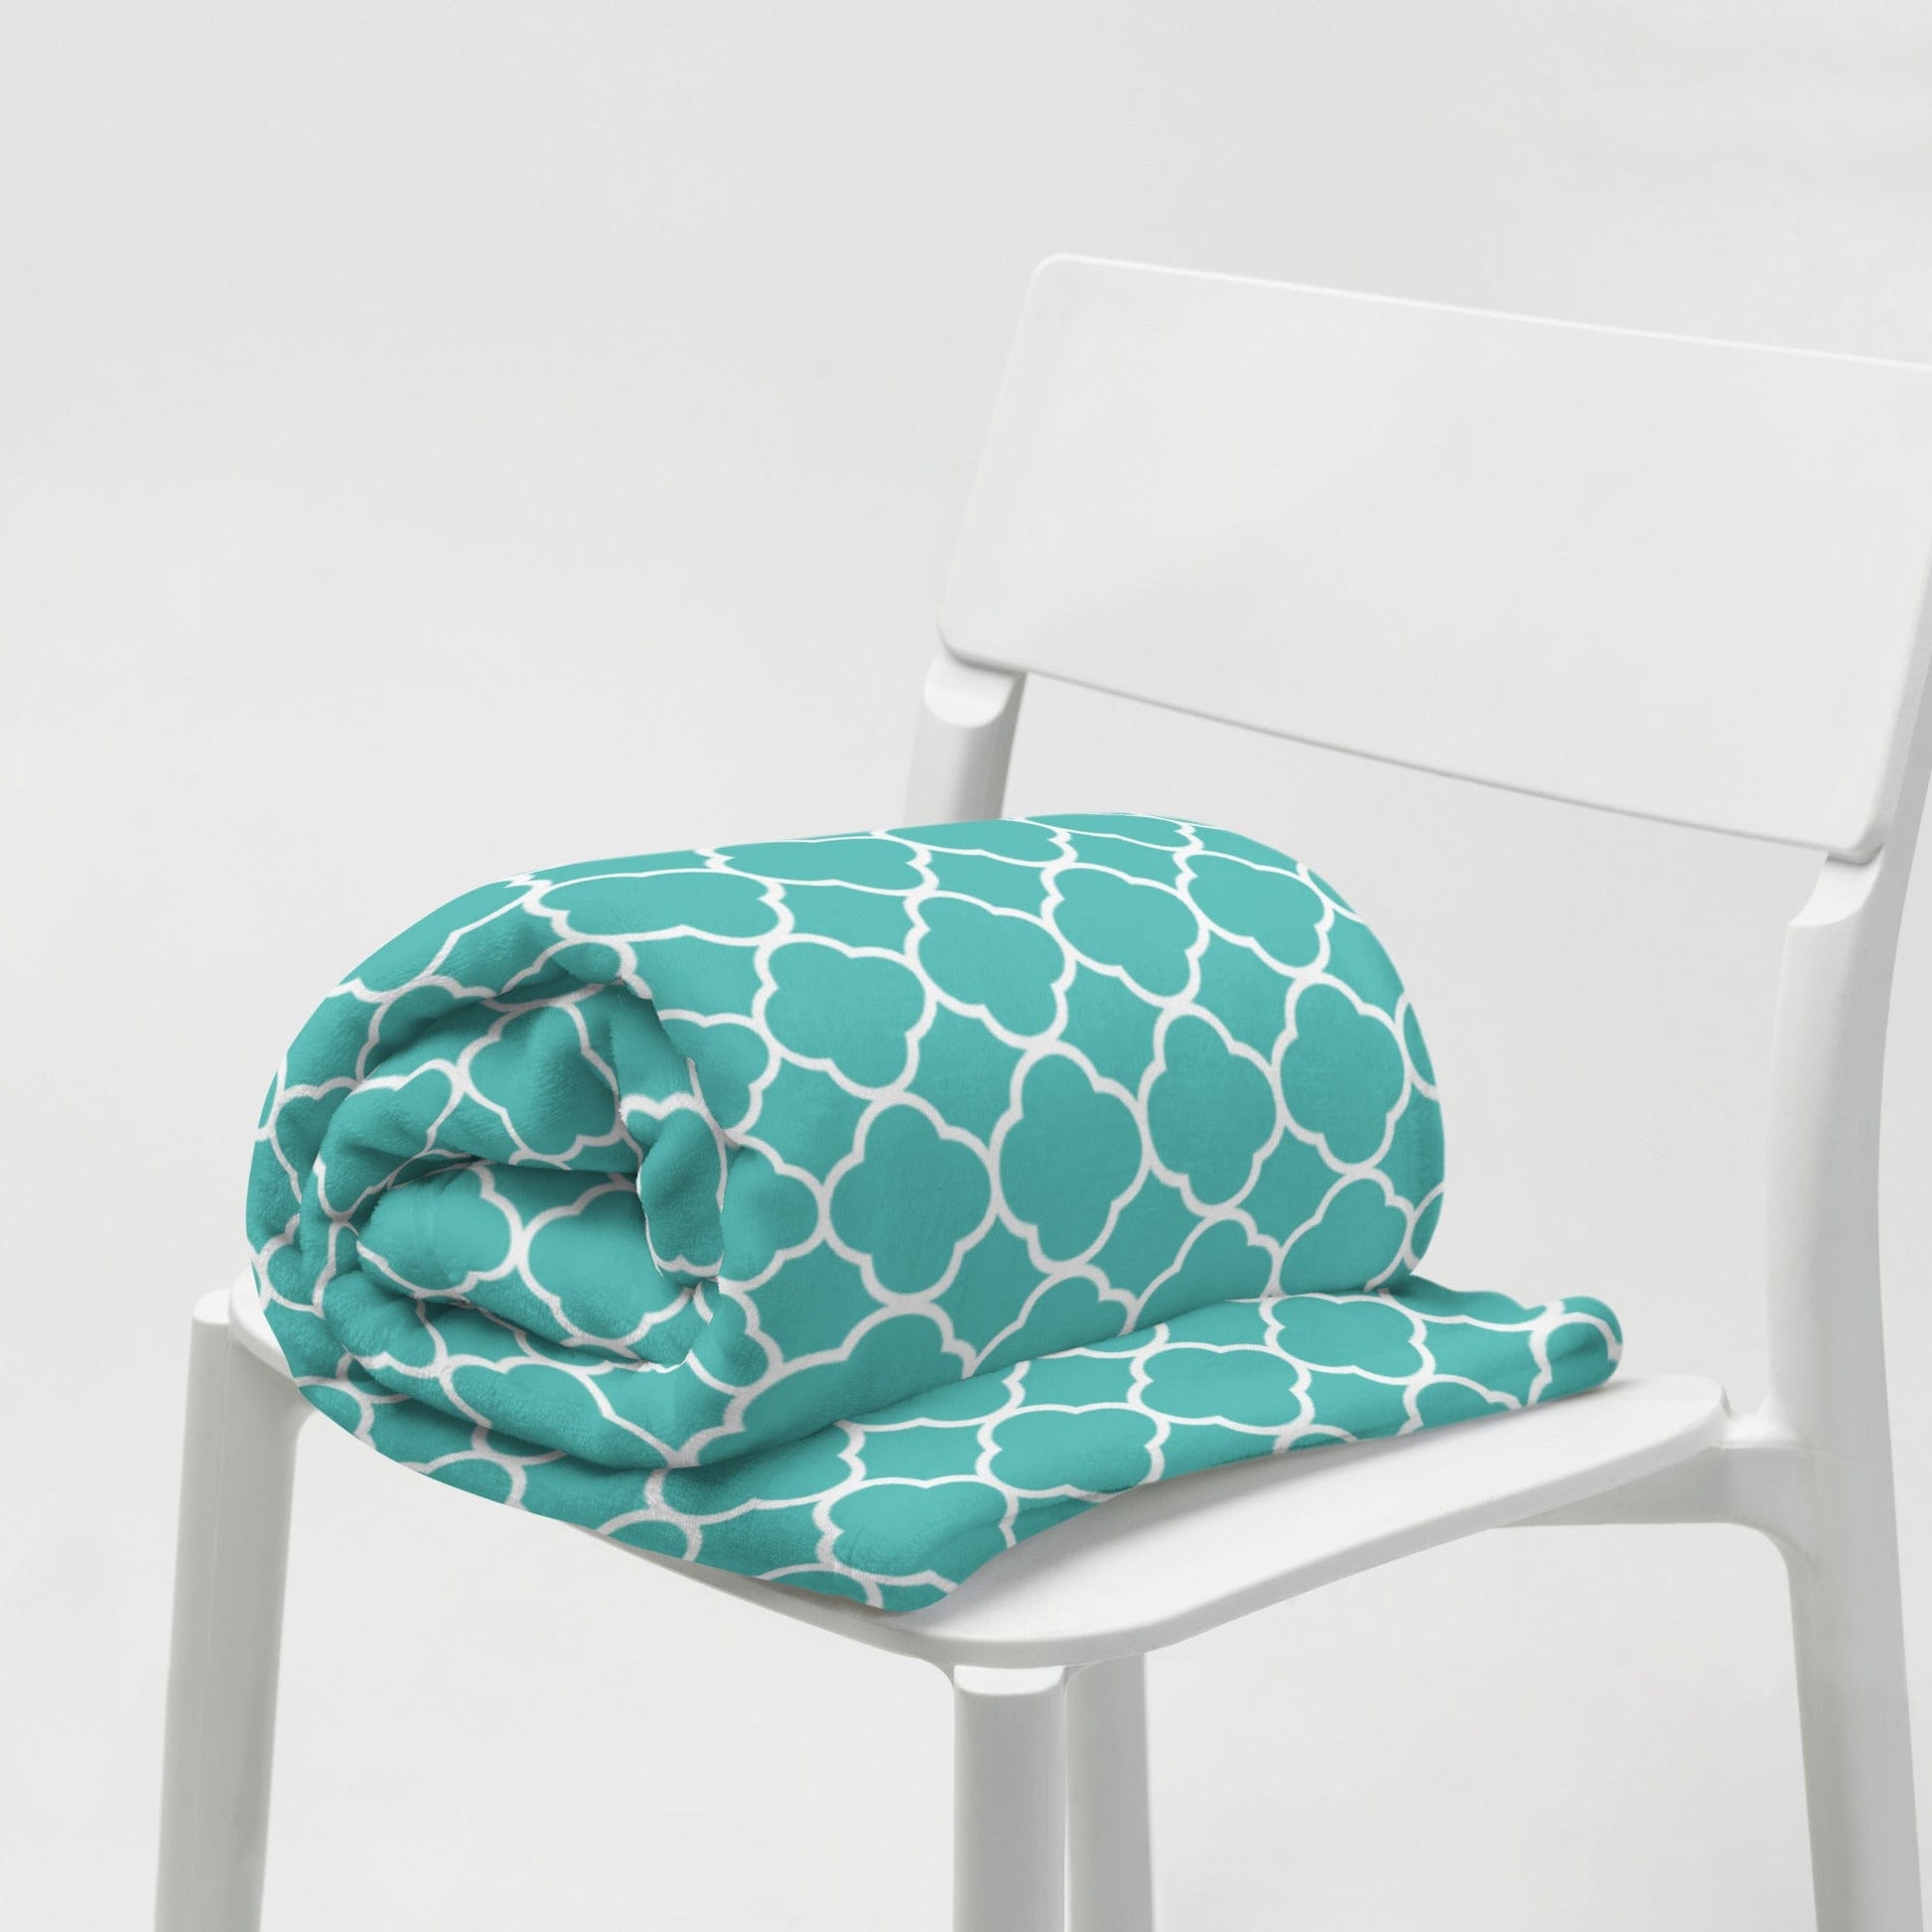 Turquoise Quatrefoil Throw Blanket - Premium  - Just €67.95! Shop now at San Rocco Italia